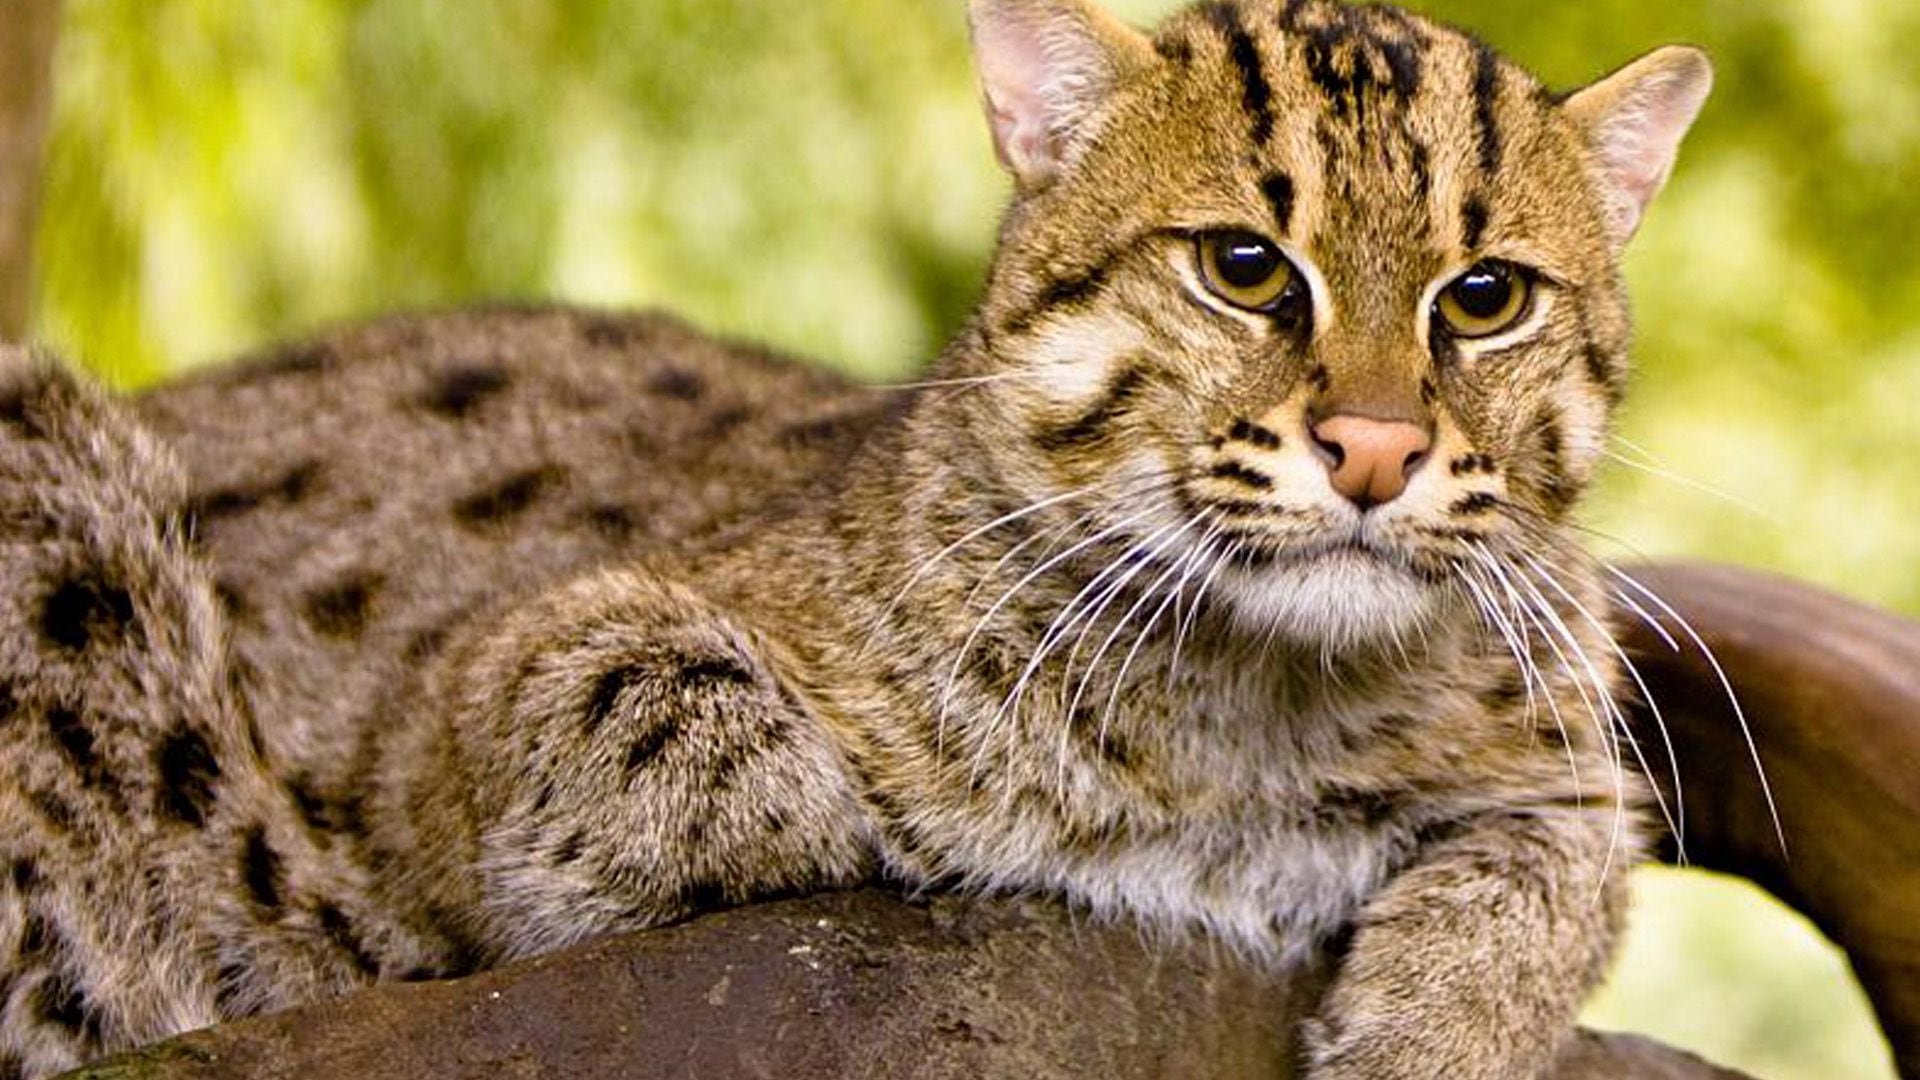 El gato pescador es una especie vulnerable, de acuerdo con la UICN. (Wikicommons/Kelinahandbasket)

Gatos, gato pescador, felinos, animales, mascotas, noticias de animales, noticias de mascotas